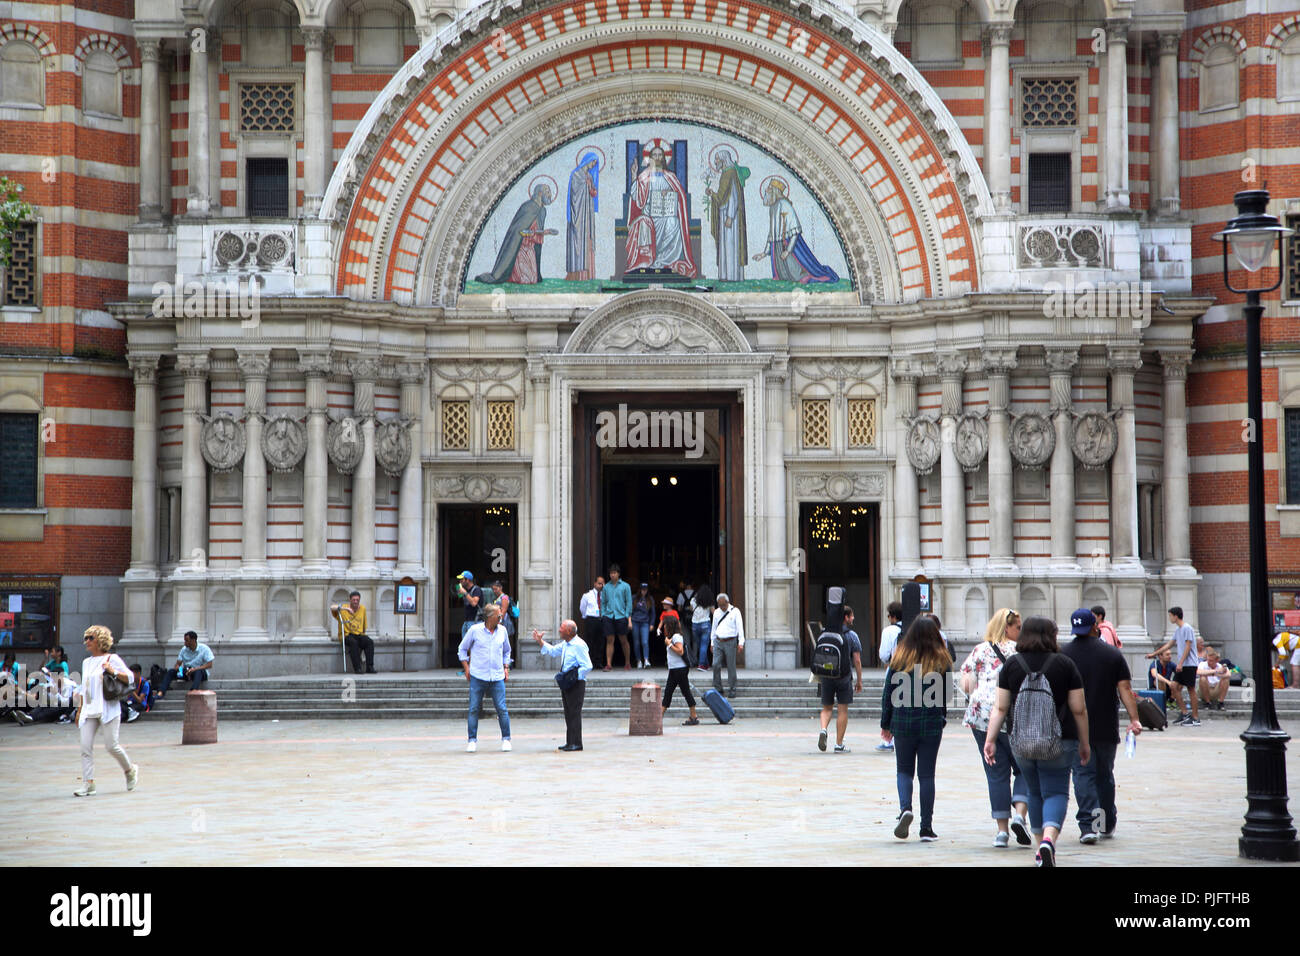 Victoria Londra Inghilterra Cattedrale di Westminster a nord ovest del portale timpano ad arco mostra mosaico raffigurante San Pietro, Vergine Maria, Gesù Cristo come Pantocr Foto Stock